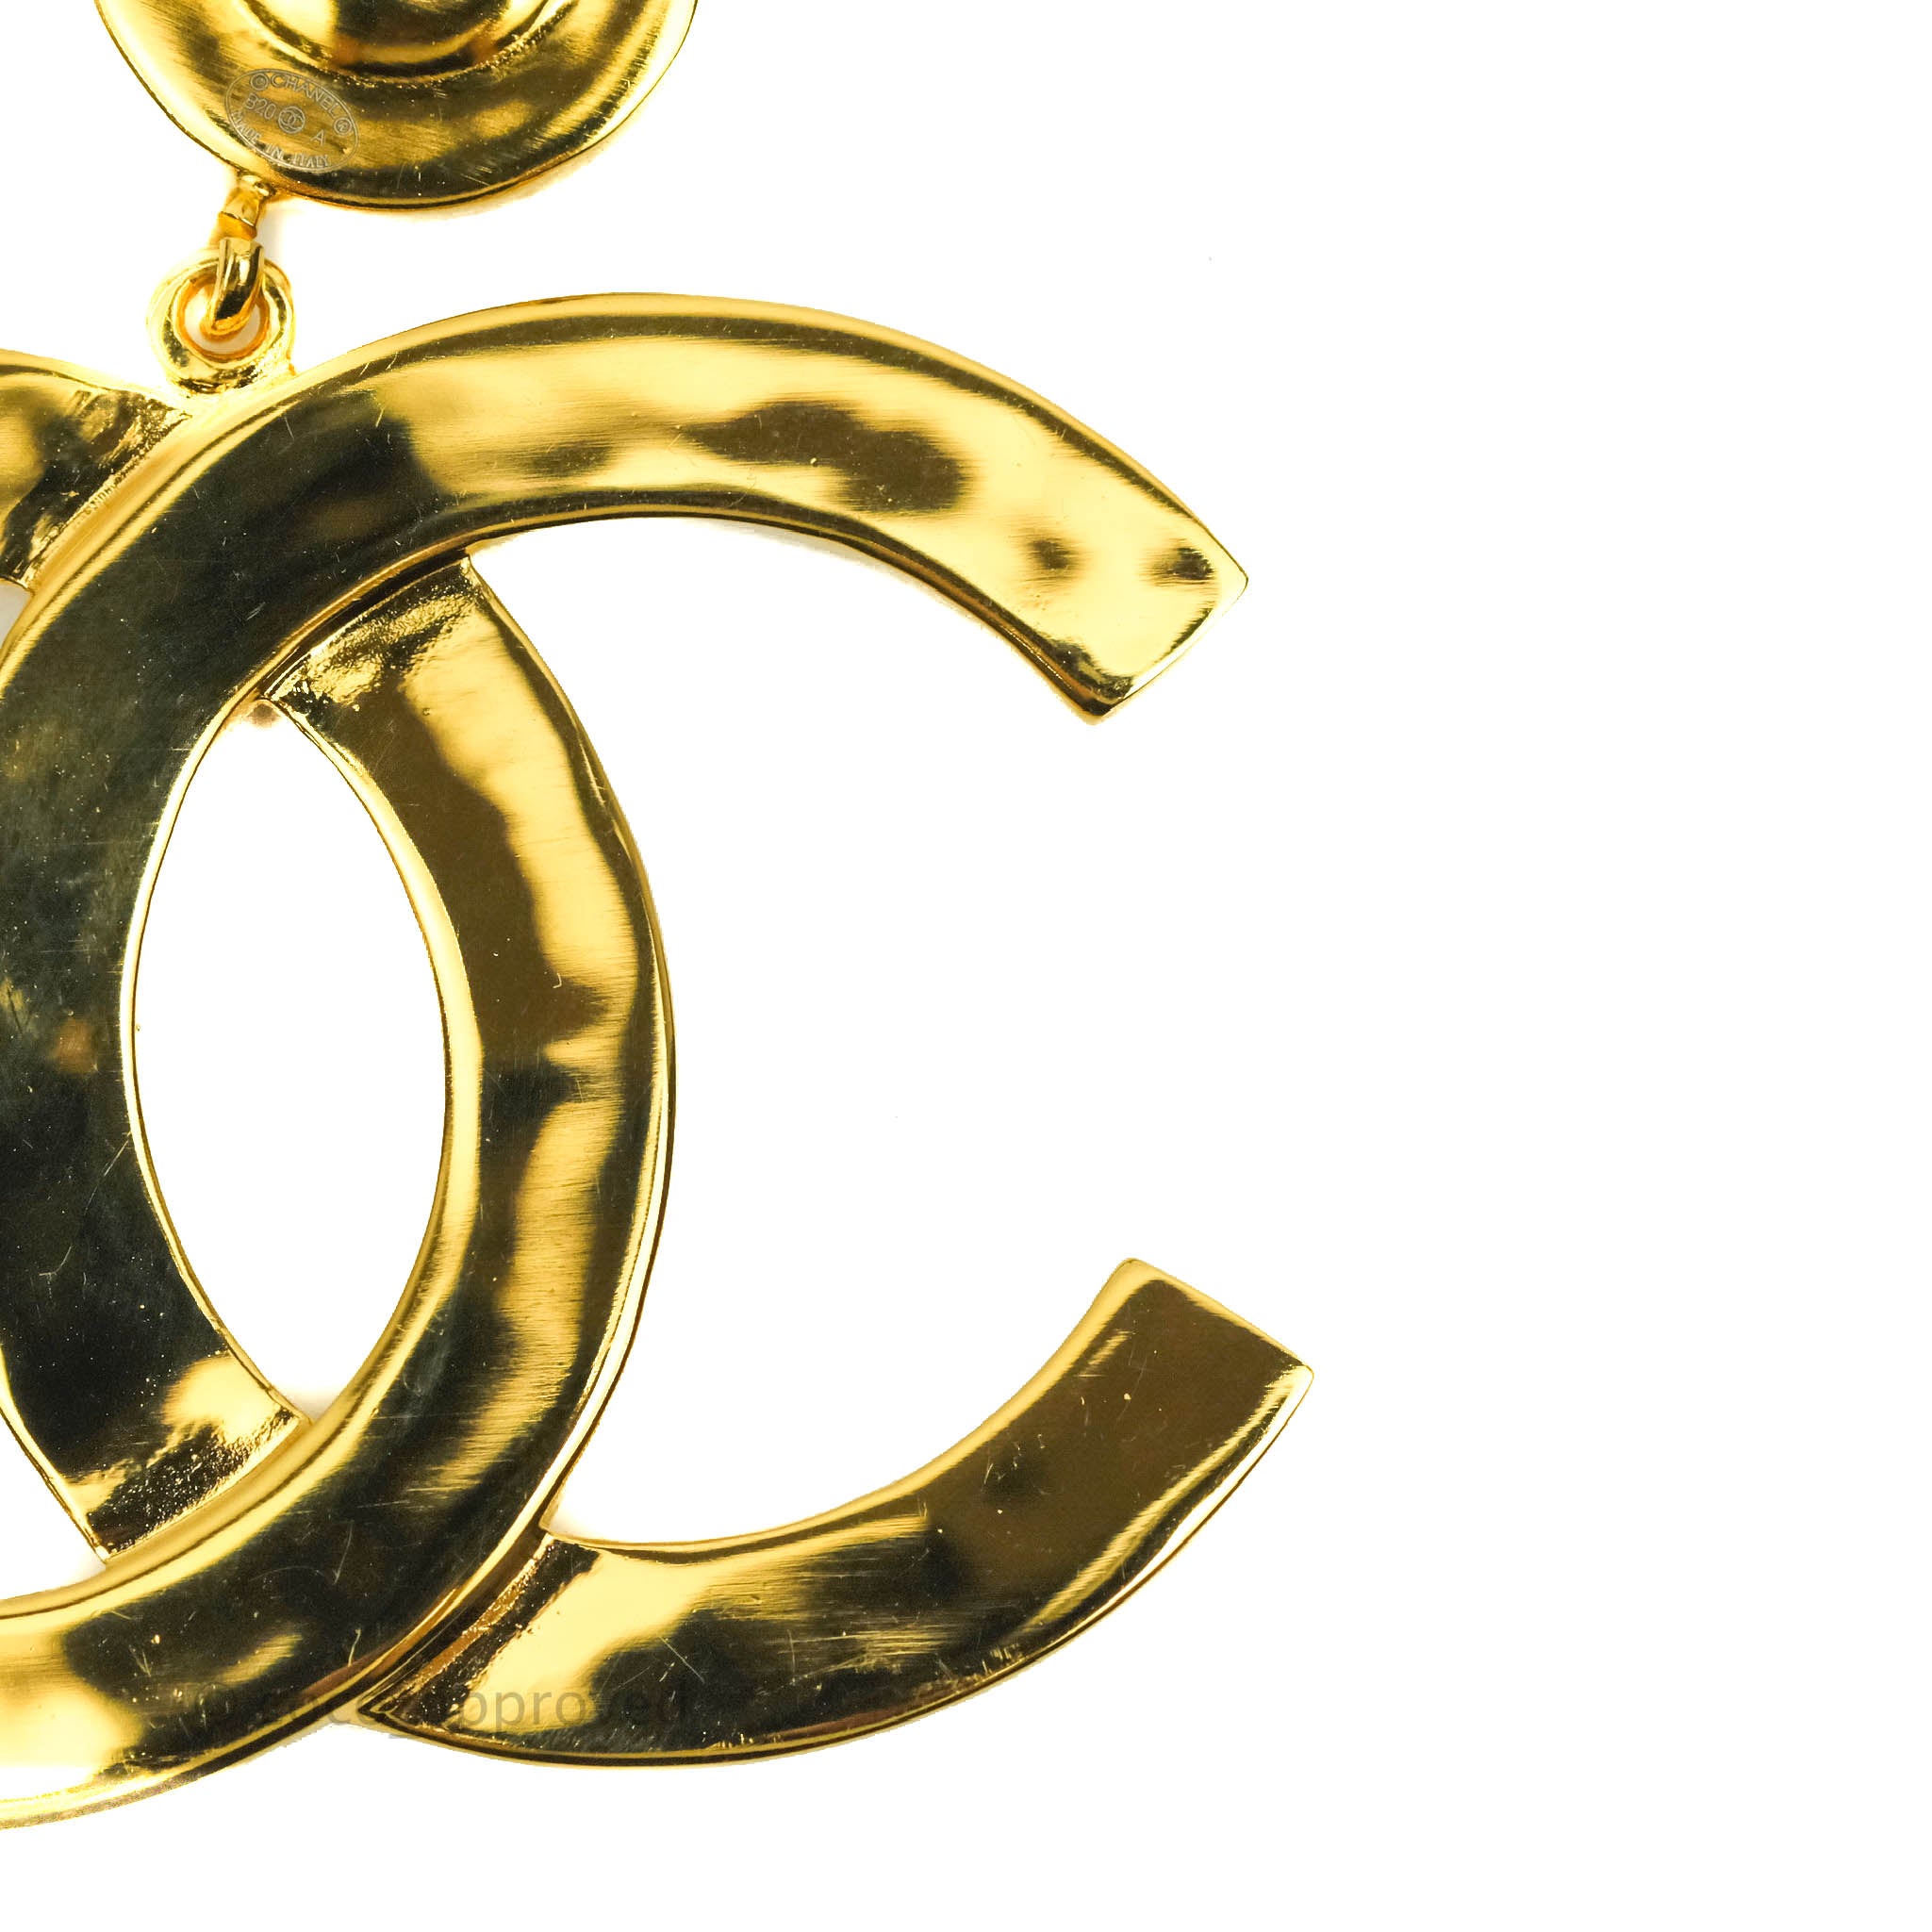 Chanel Cc Drop Earrings Matte Gold